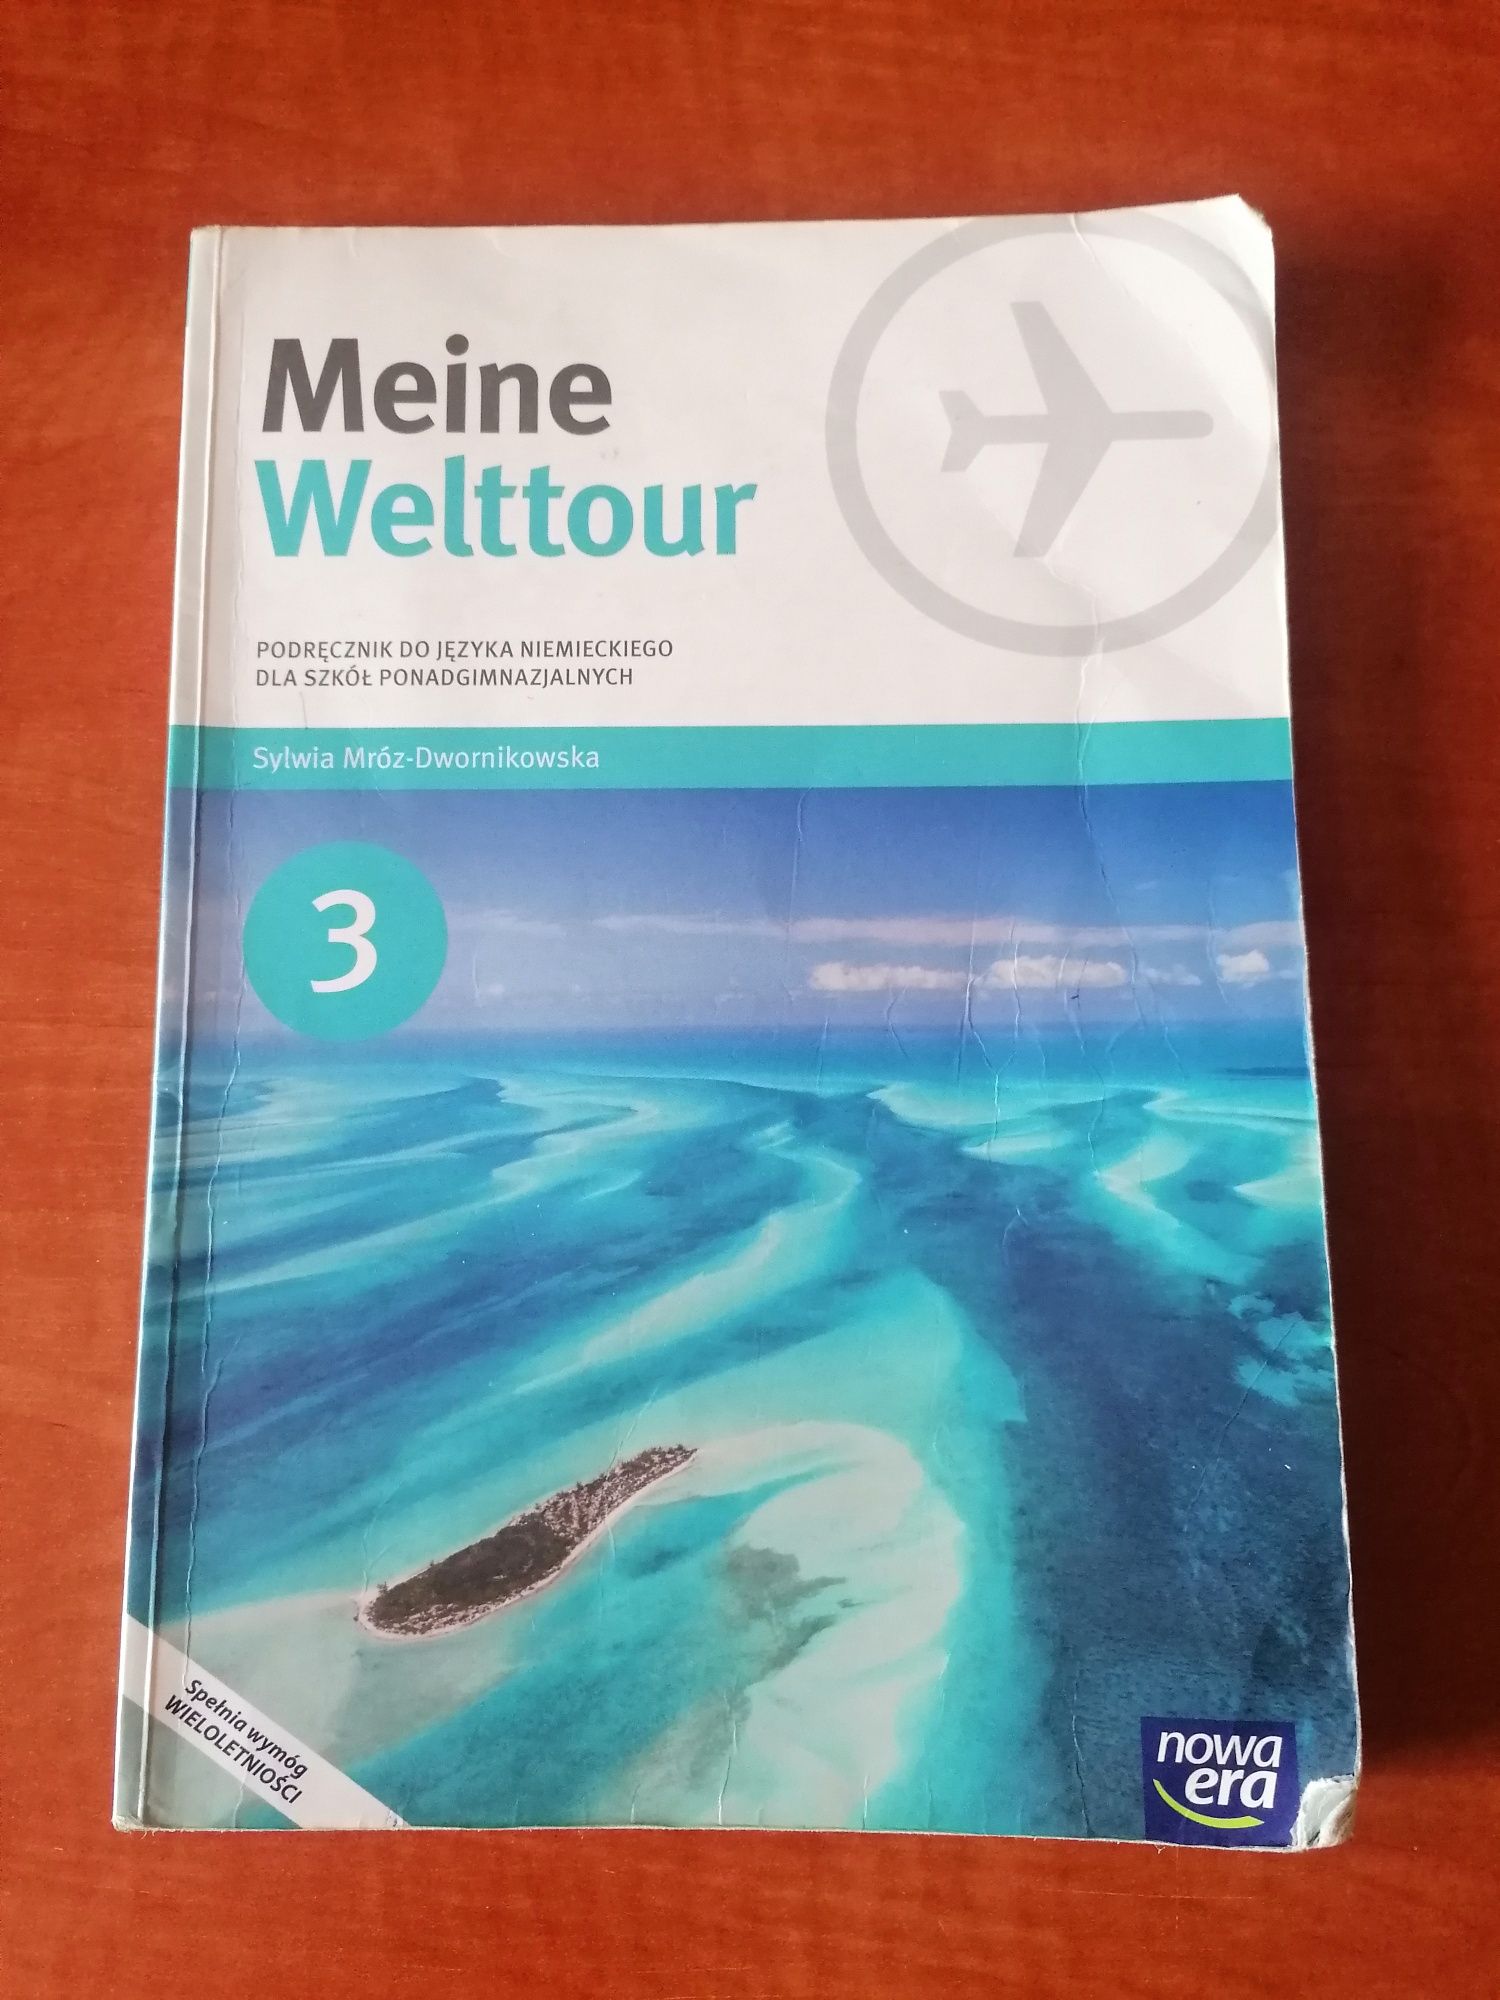 Maine Welttour, podręcznik do języka niemieckiego.